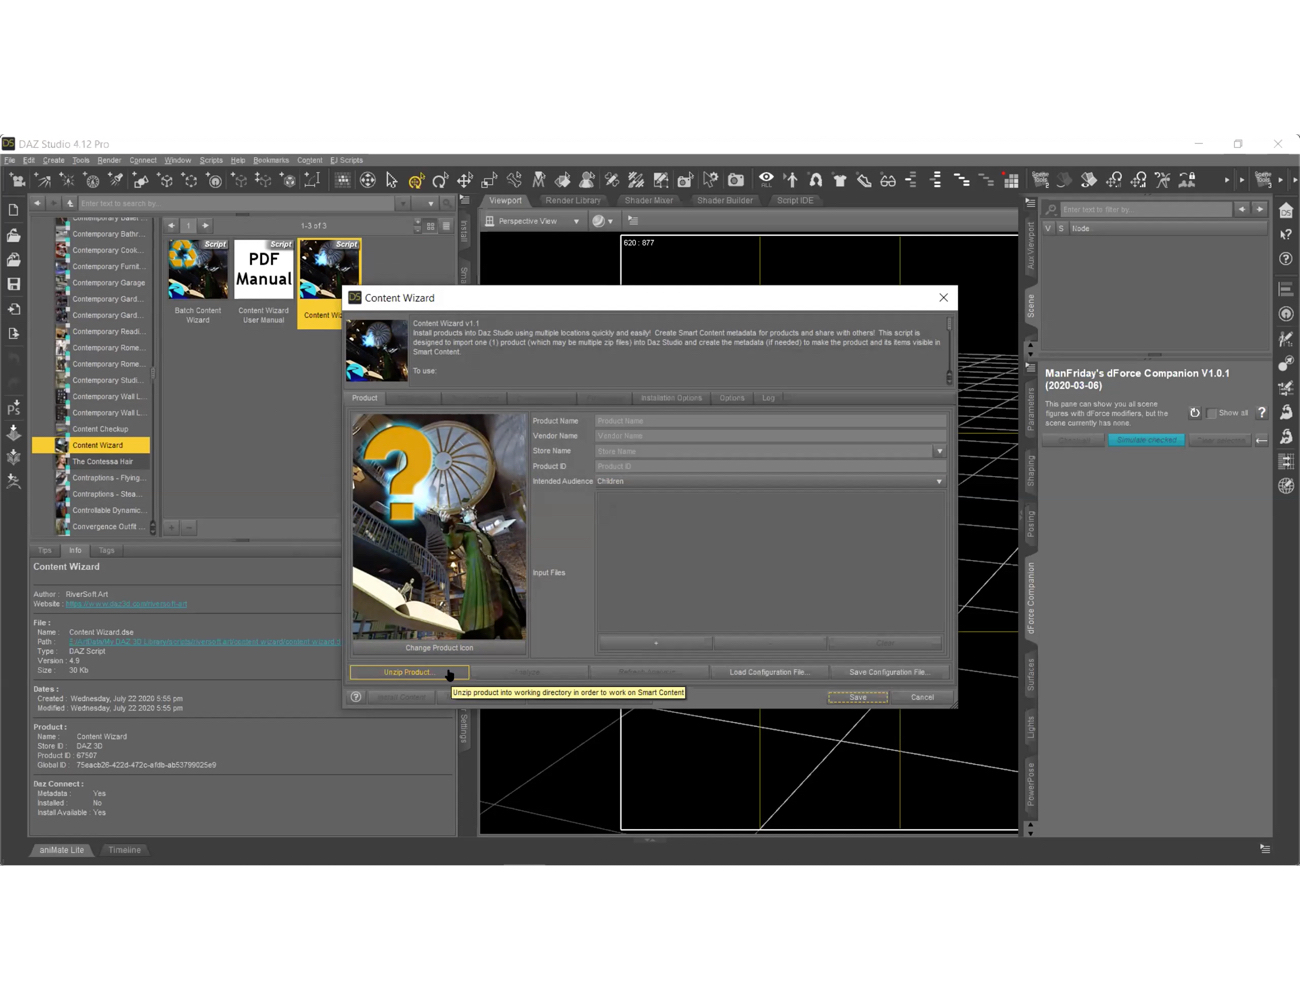 MATRIX : Tutorials on Managing DAZ Studio Content by: Digital Art Live, 3D Models by Daz 3D